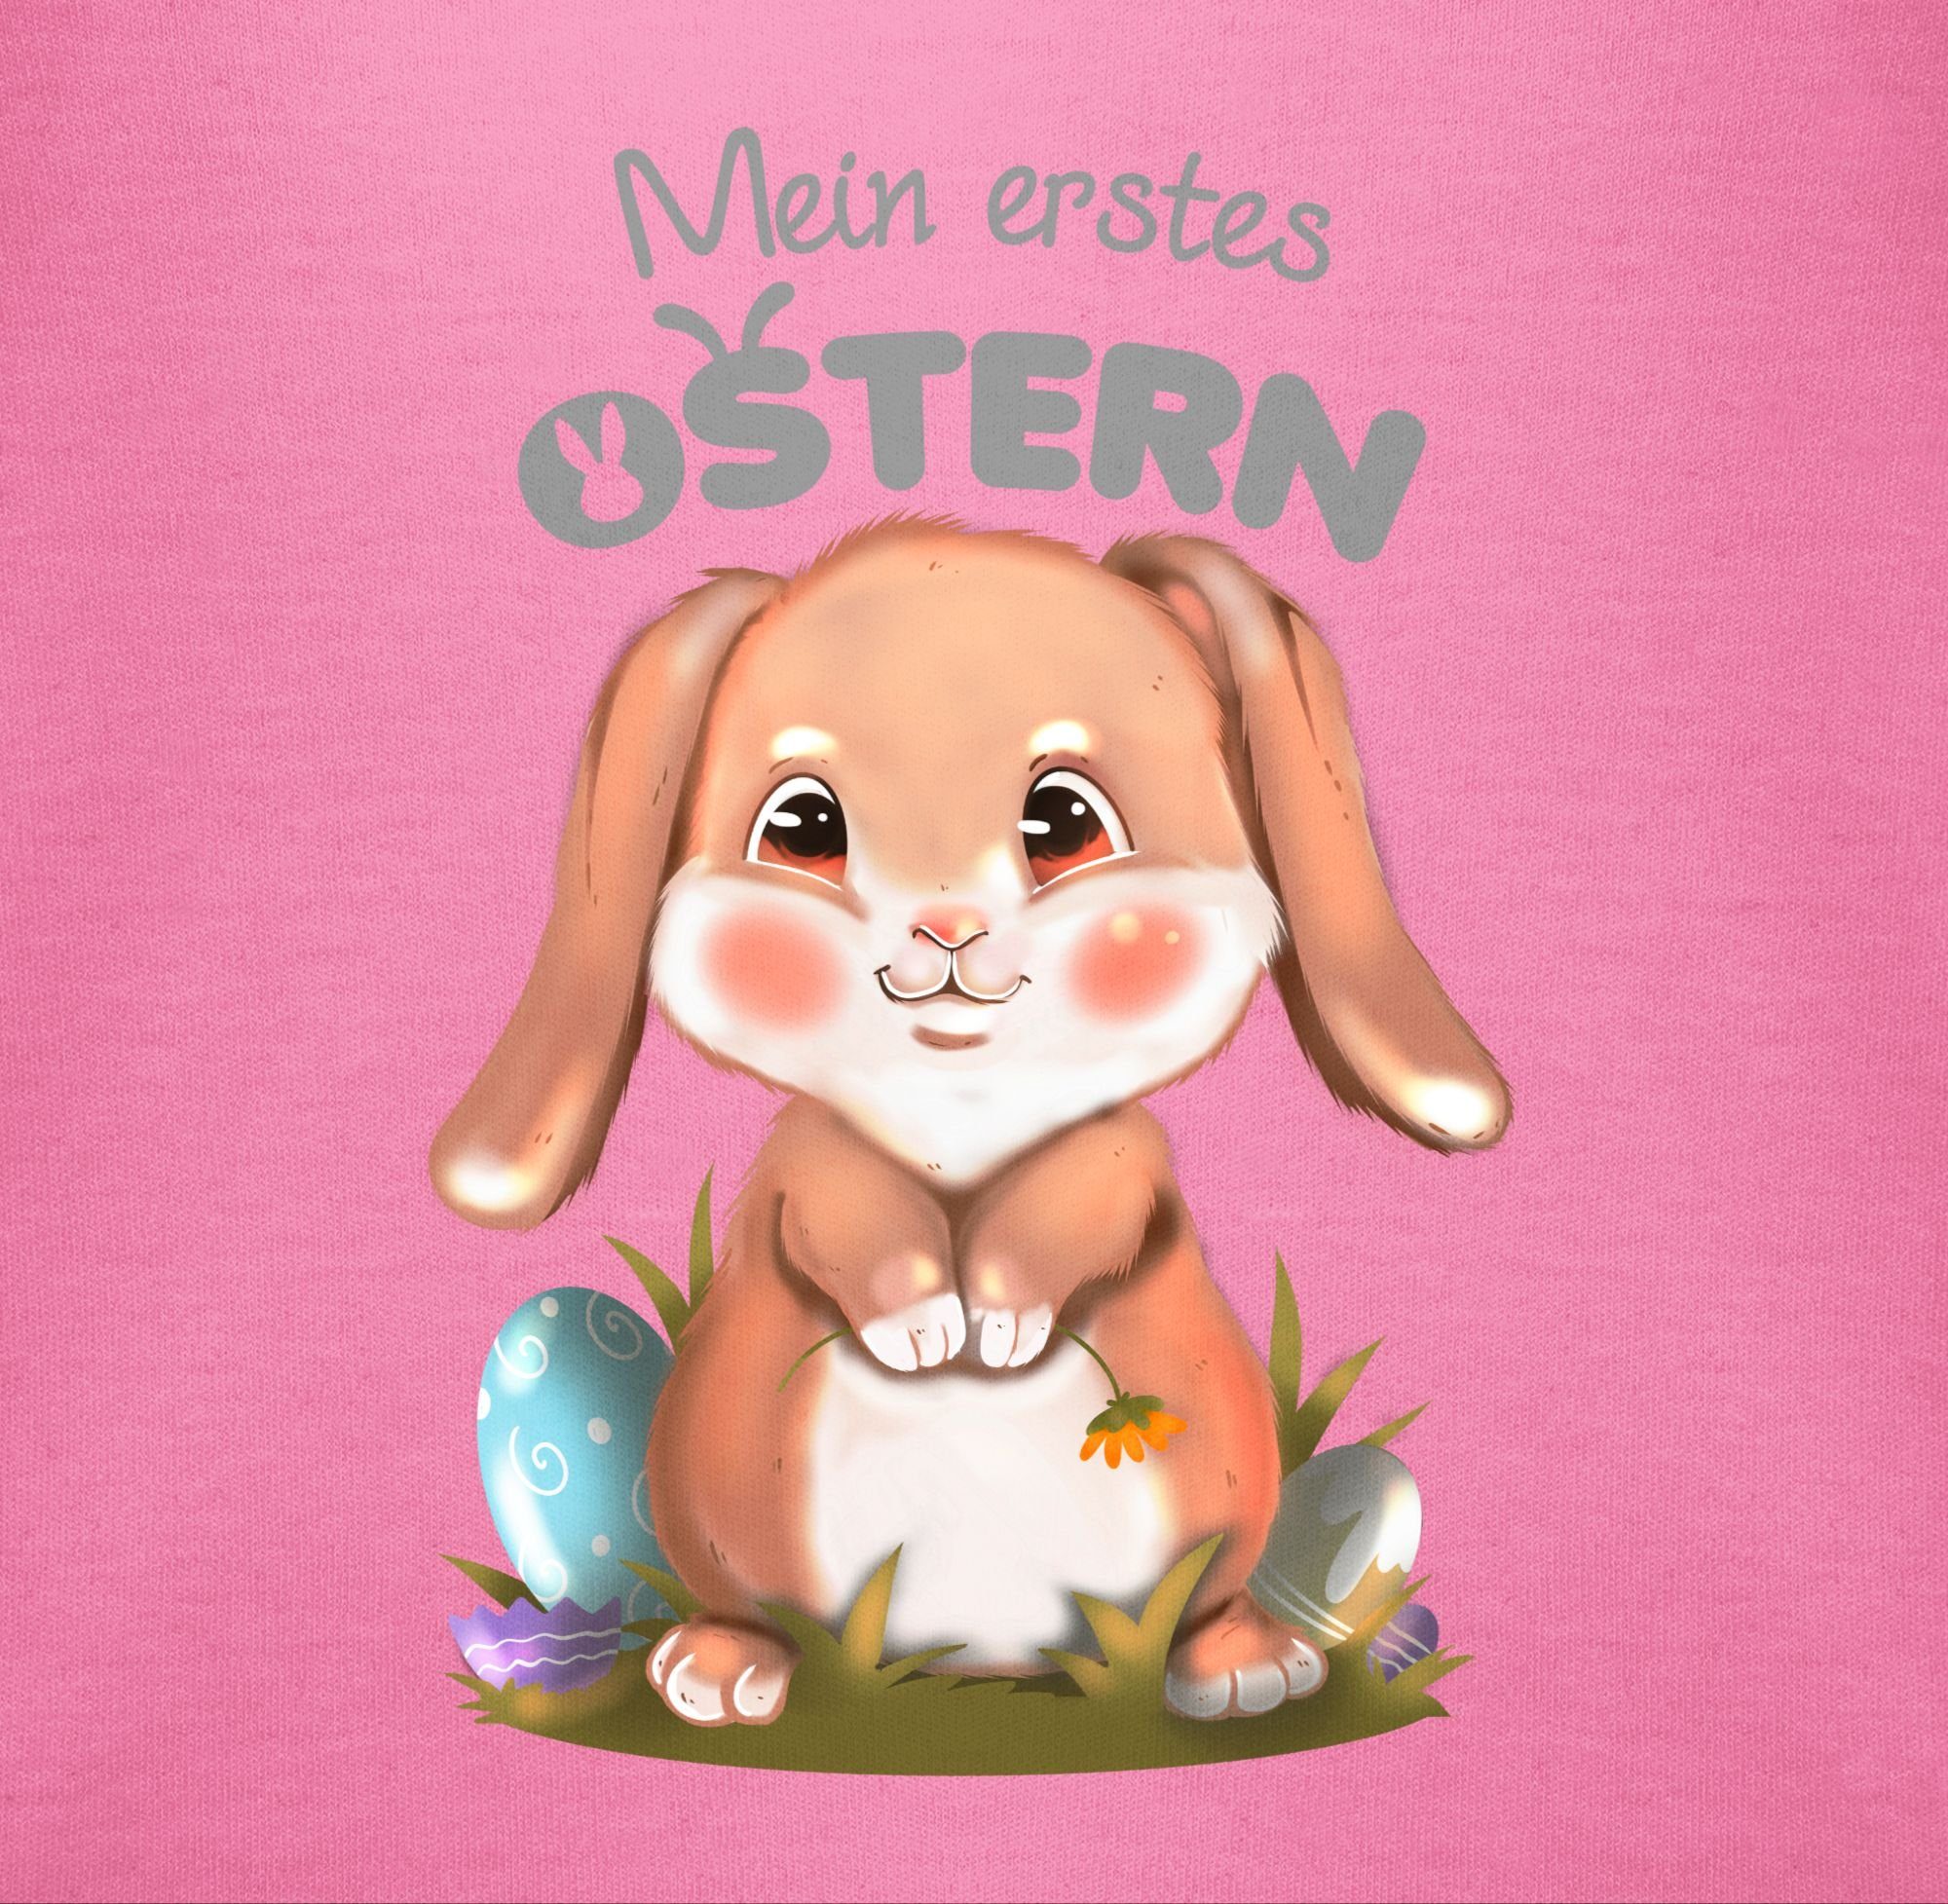 Aquarell Ostergeschenke Mein 3 Ostern Shirtracer Hase erstes Shirtbody grau Pink